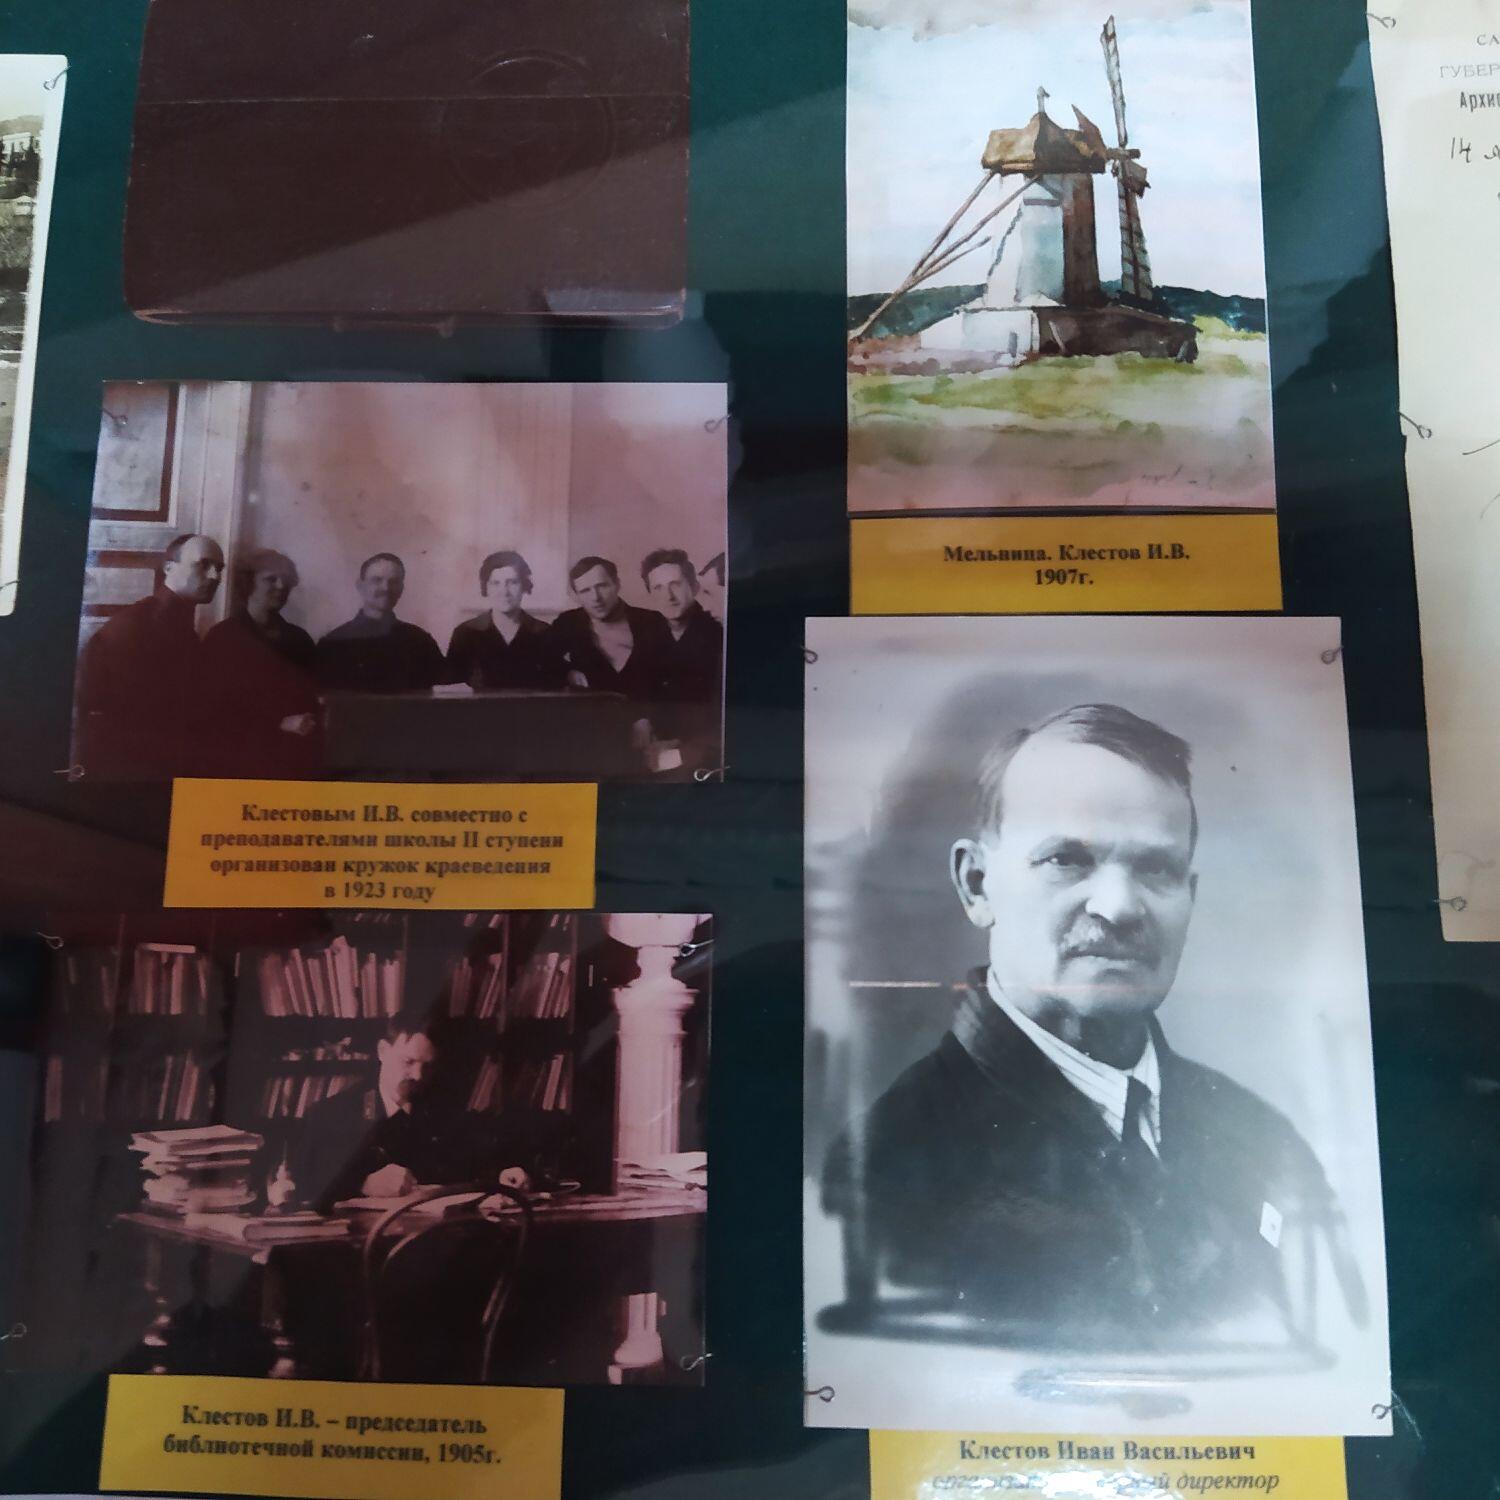 К 100-летию музея открылась выставка И.В. Клестова «У истоков памяти»